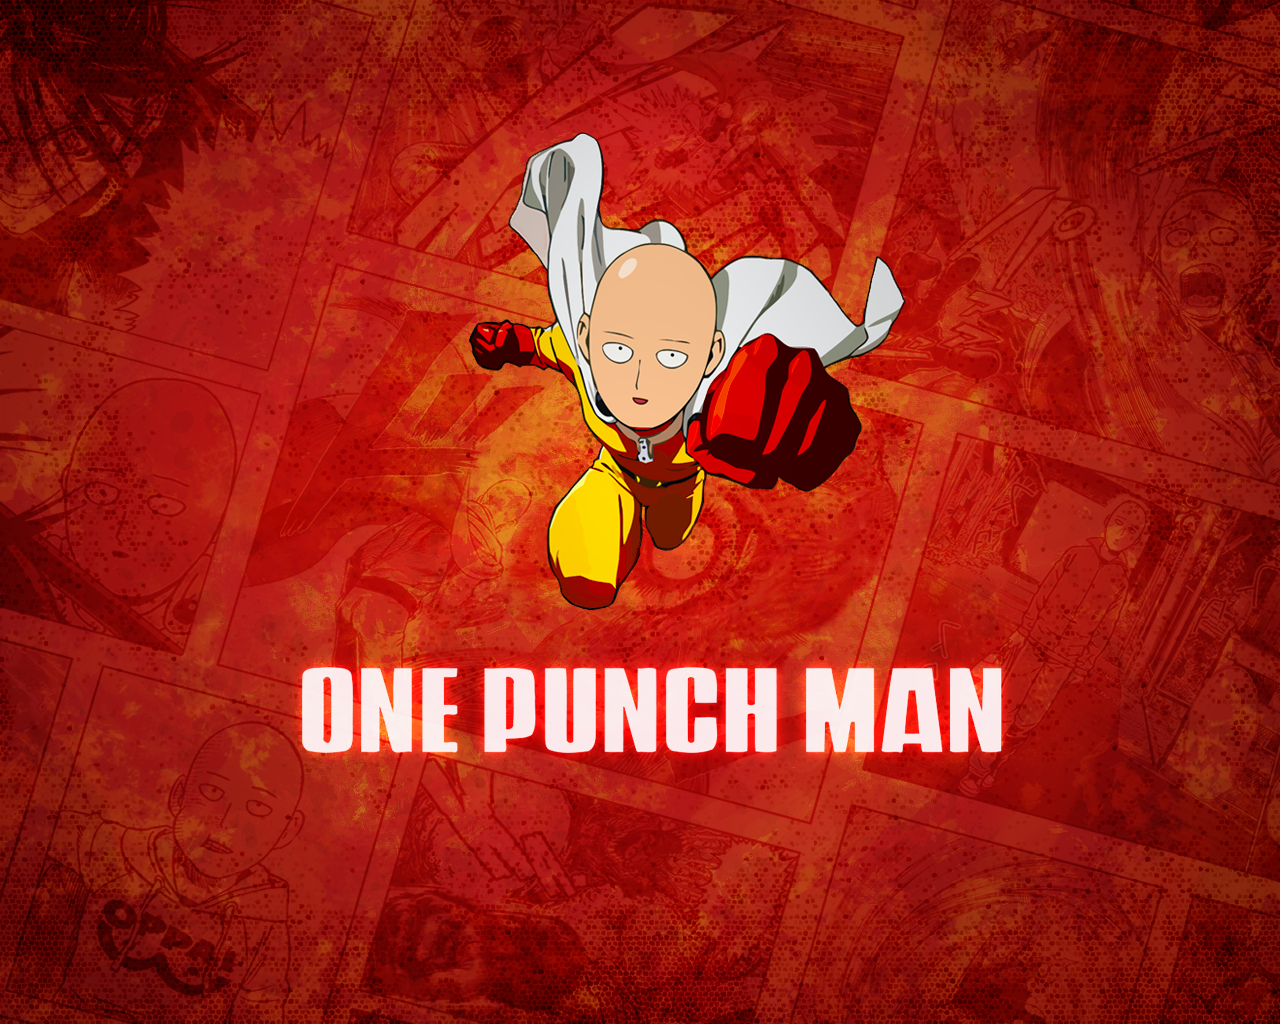 carta da parati one punch man,cartone animato,rosso,cartone animato,illustrazione,personaggio fittizio